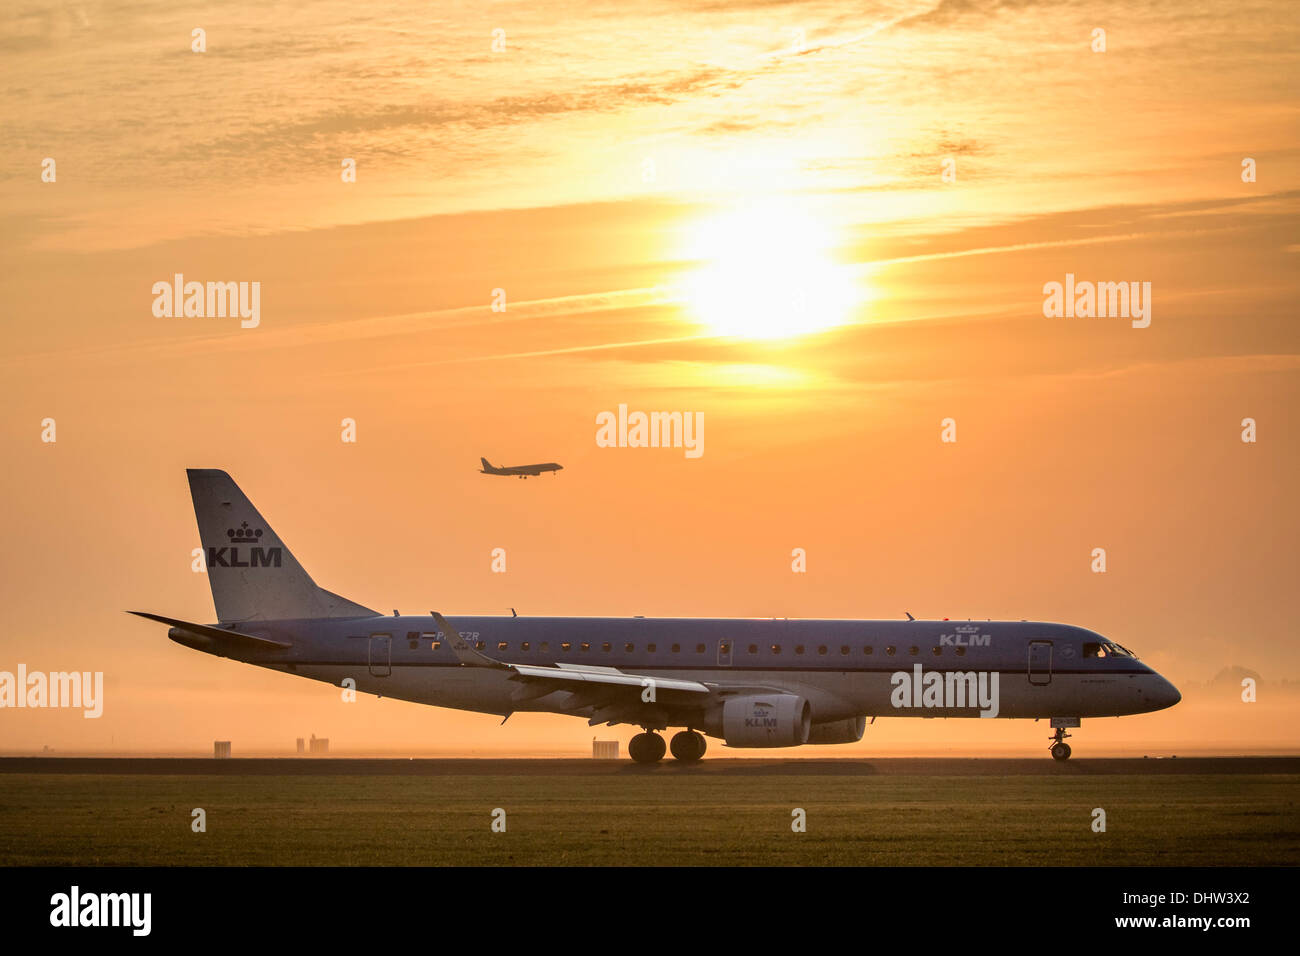 Paesi Bassi, Vijfhuizen, l'aeroporto Schiphol di Amsterdam. Pista Polderbaan chiamato. KLM atterraggio aereo. Sunrise Foto Stock